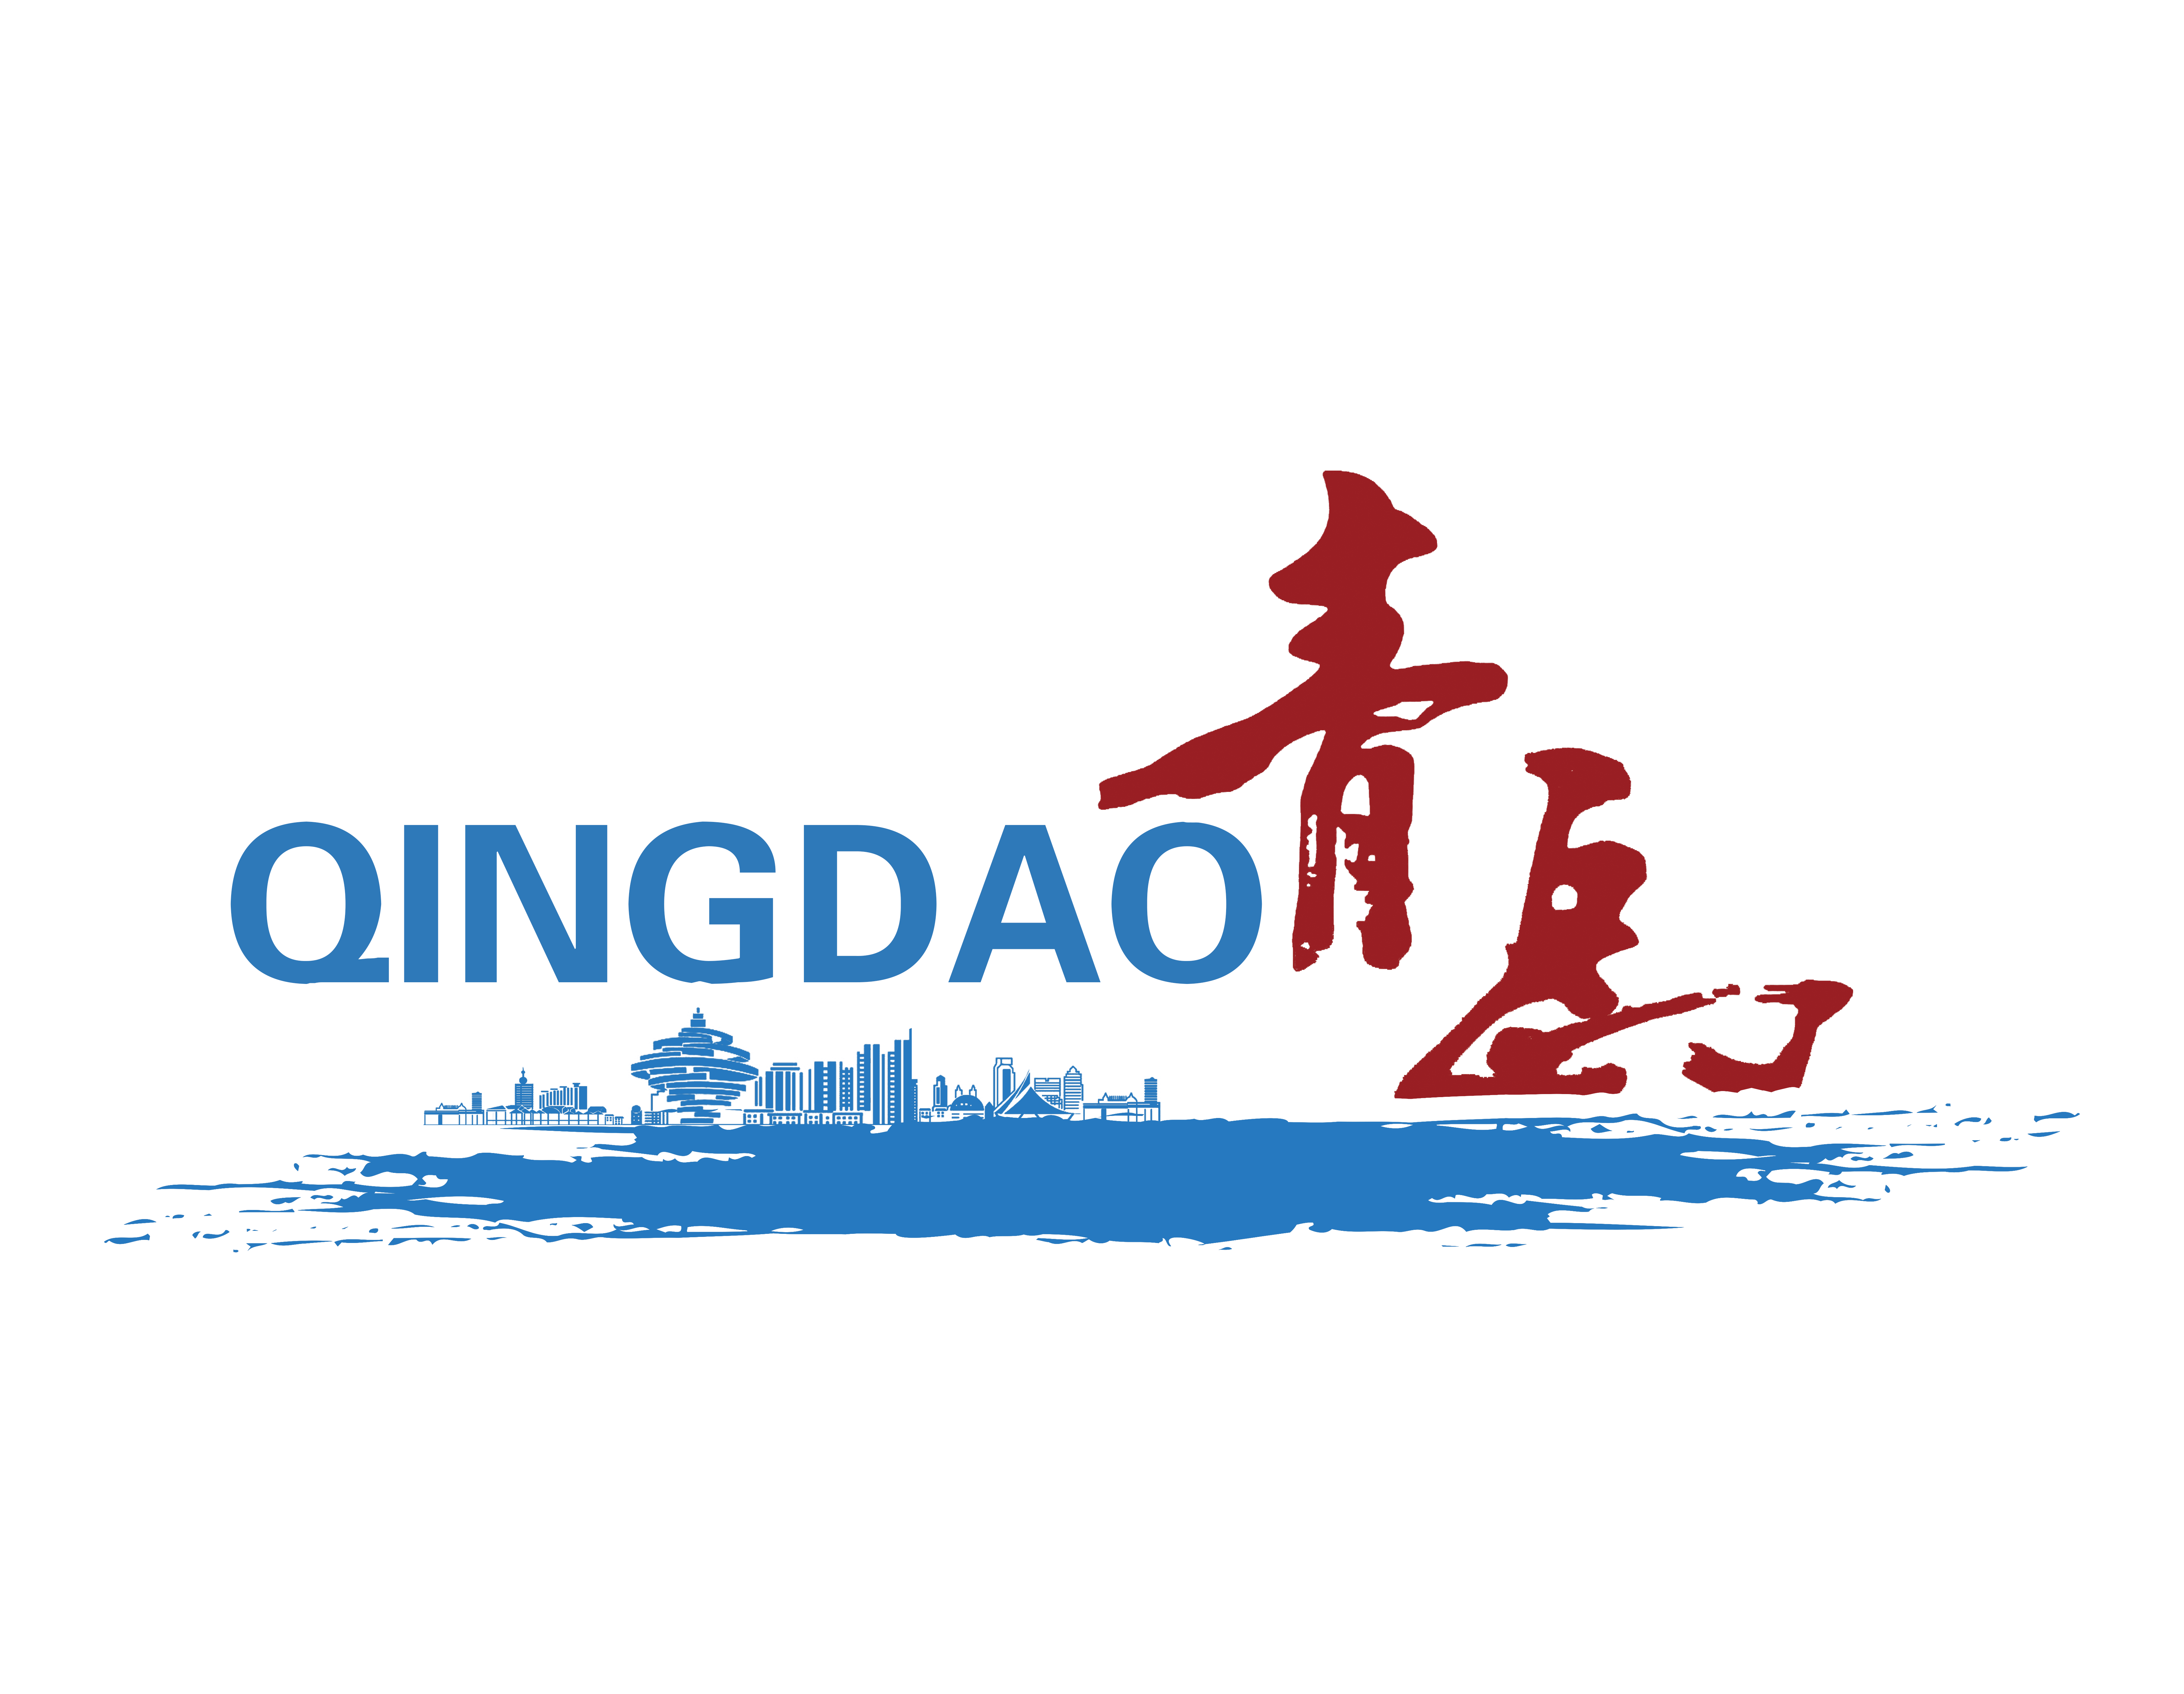 Qingdao live: Möglichkeiten & Erfahrungen bzgl. des Wirtschaftsstandorts für deutsche Unternehmen